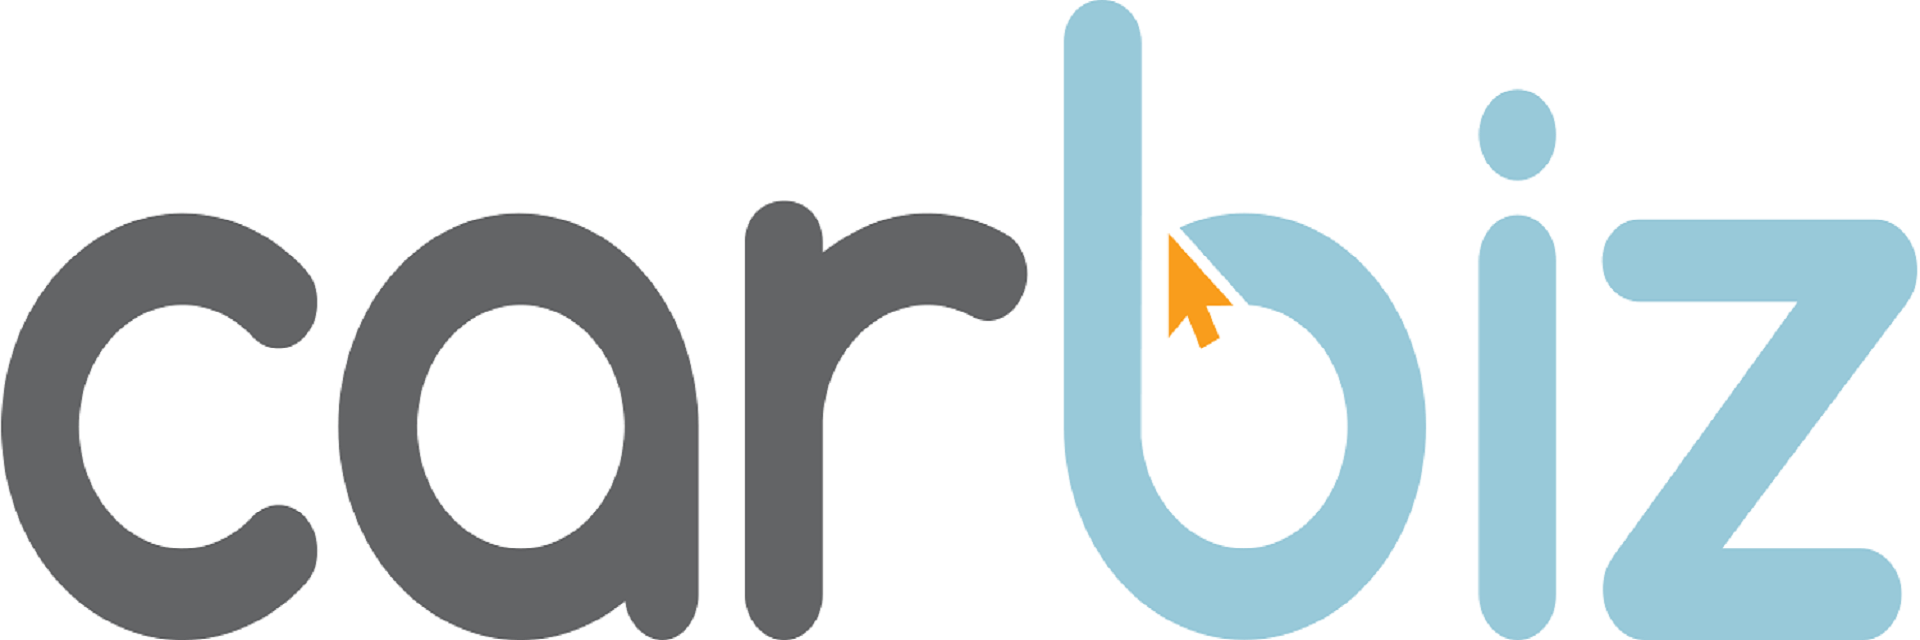 Carbiz, Ltd. logo